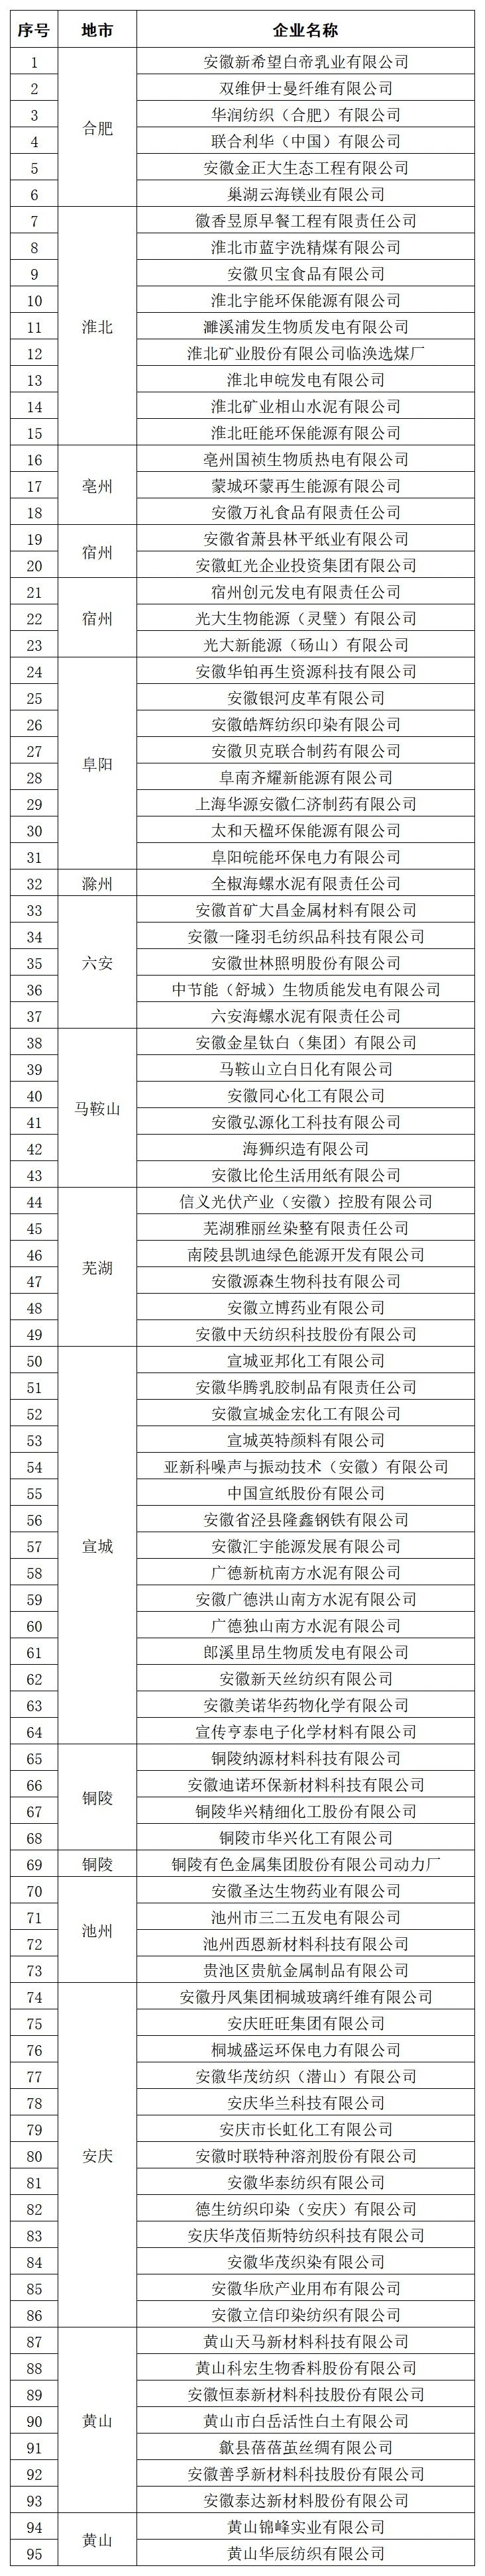 关于第七批安徽省级节水型企业名单公示